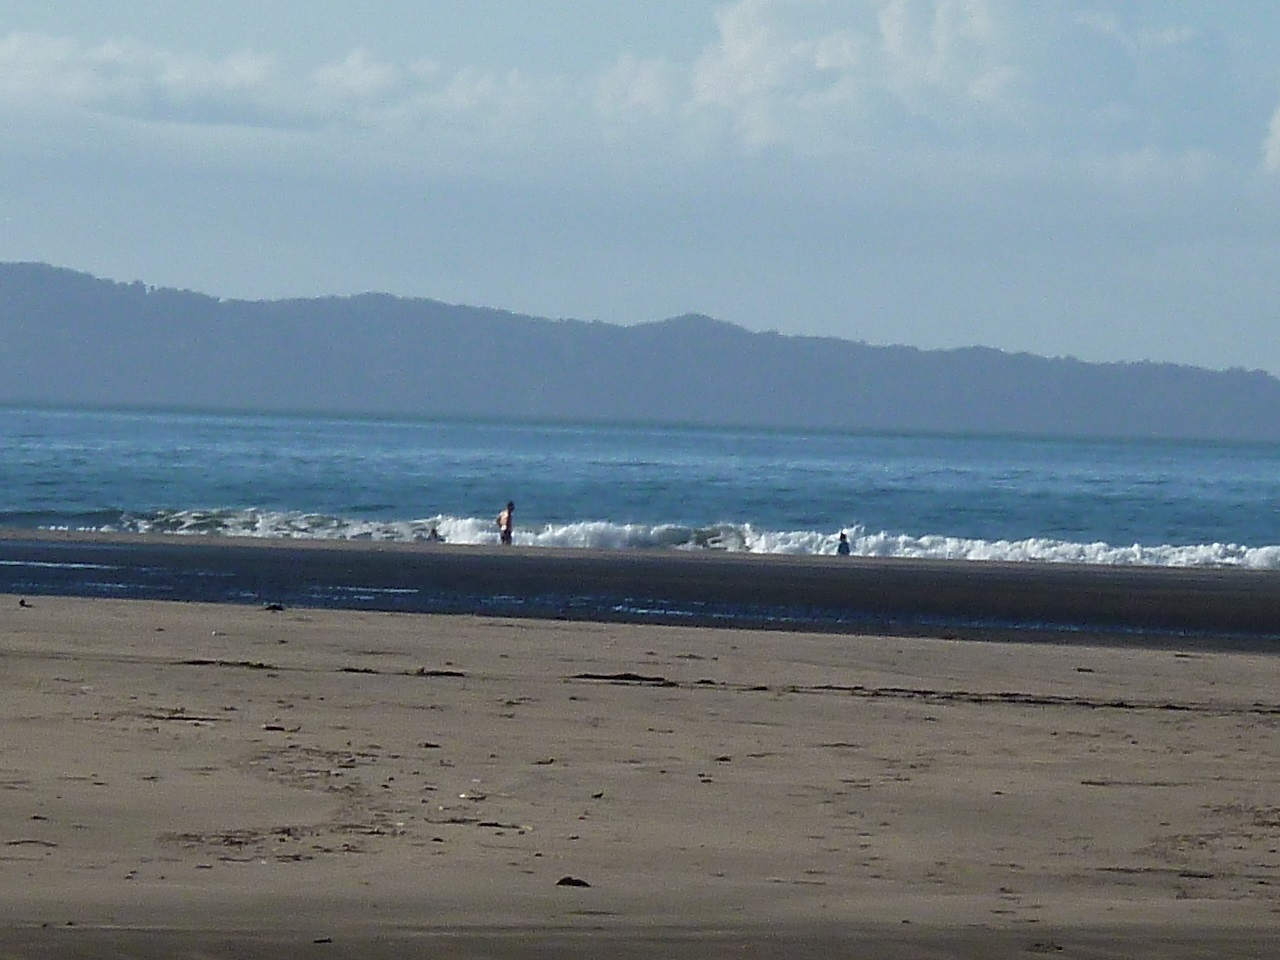 Los visitantes también podrán disfrutar de las cristalinas aguas de las playas de esta región veragüense. Foto: Melquiades Vásquez